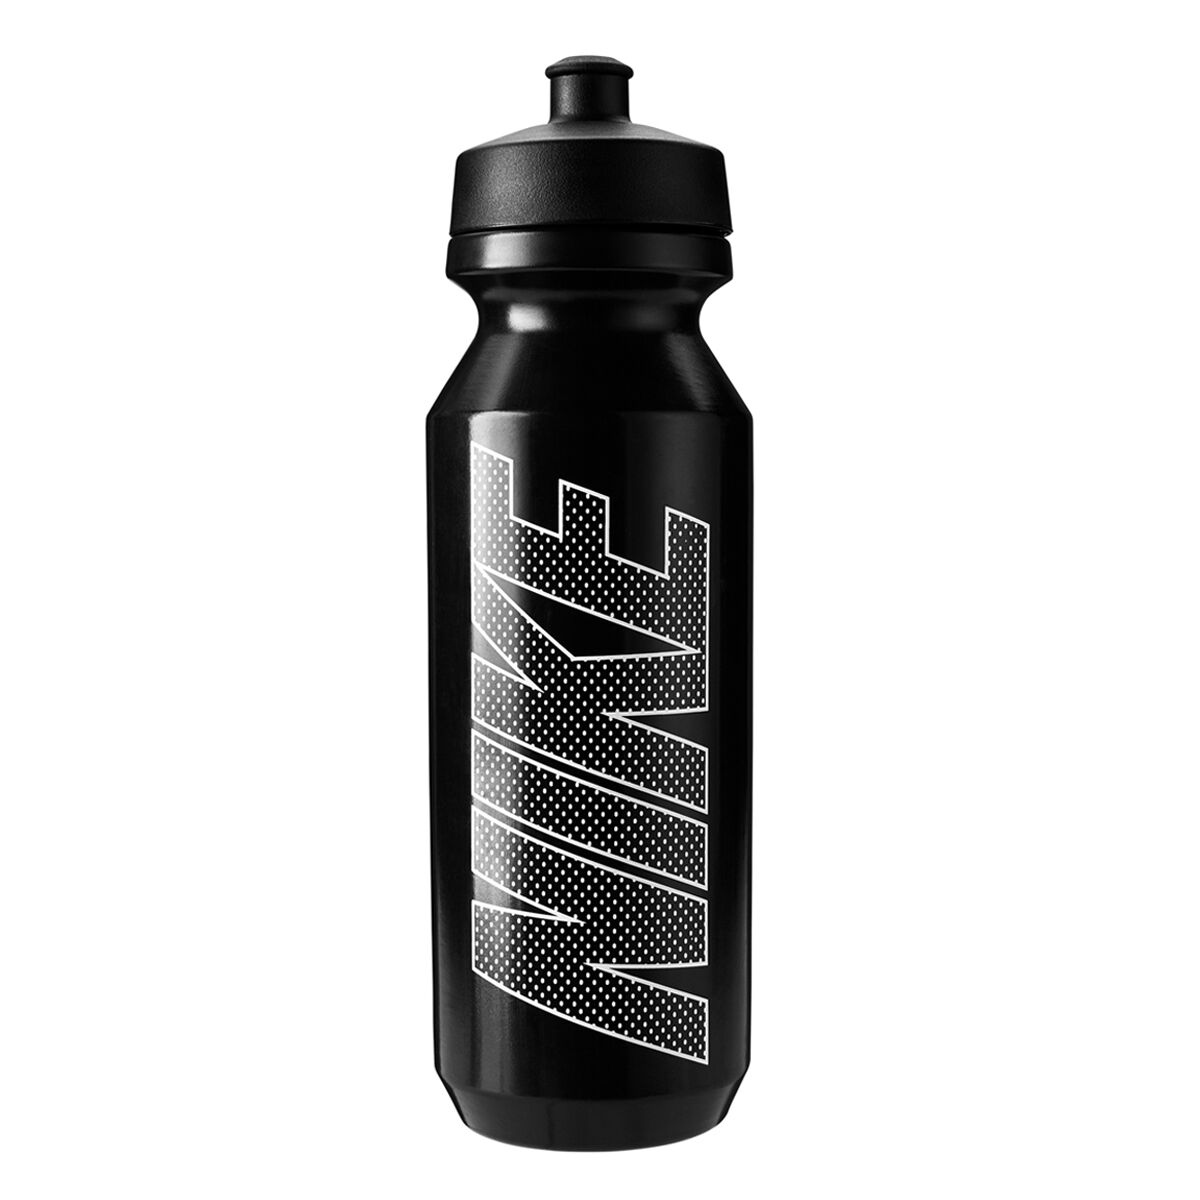 nike 1 litre water bottle